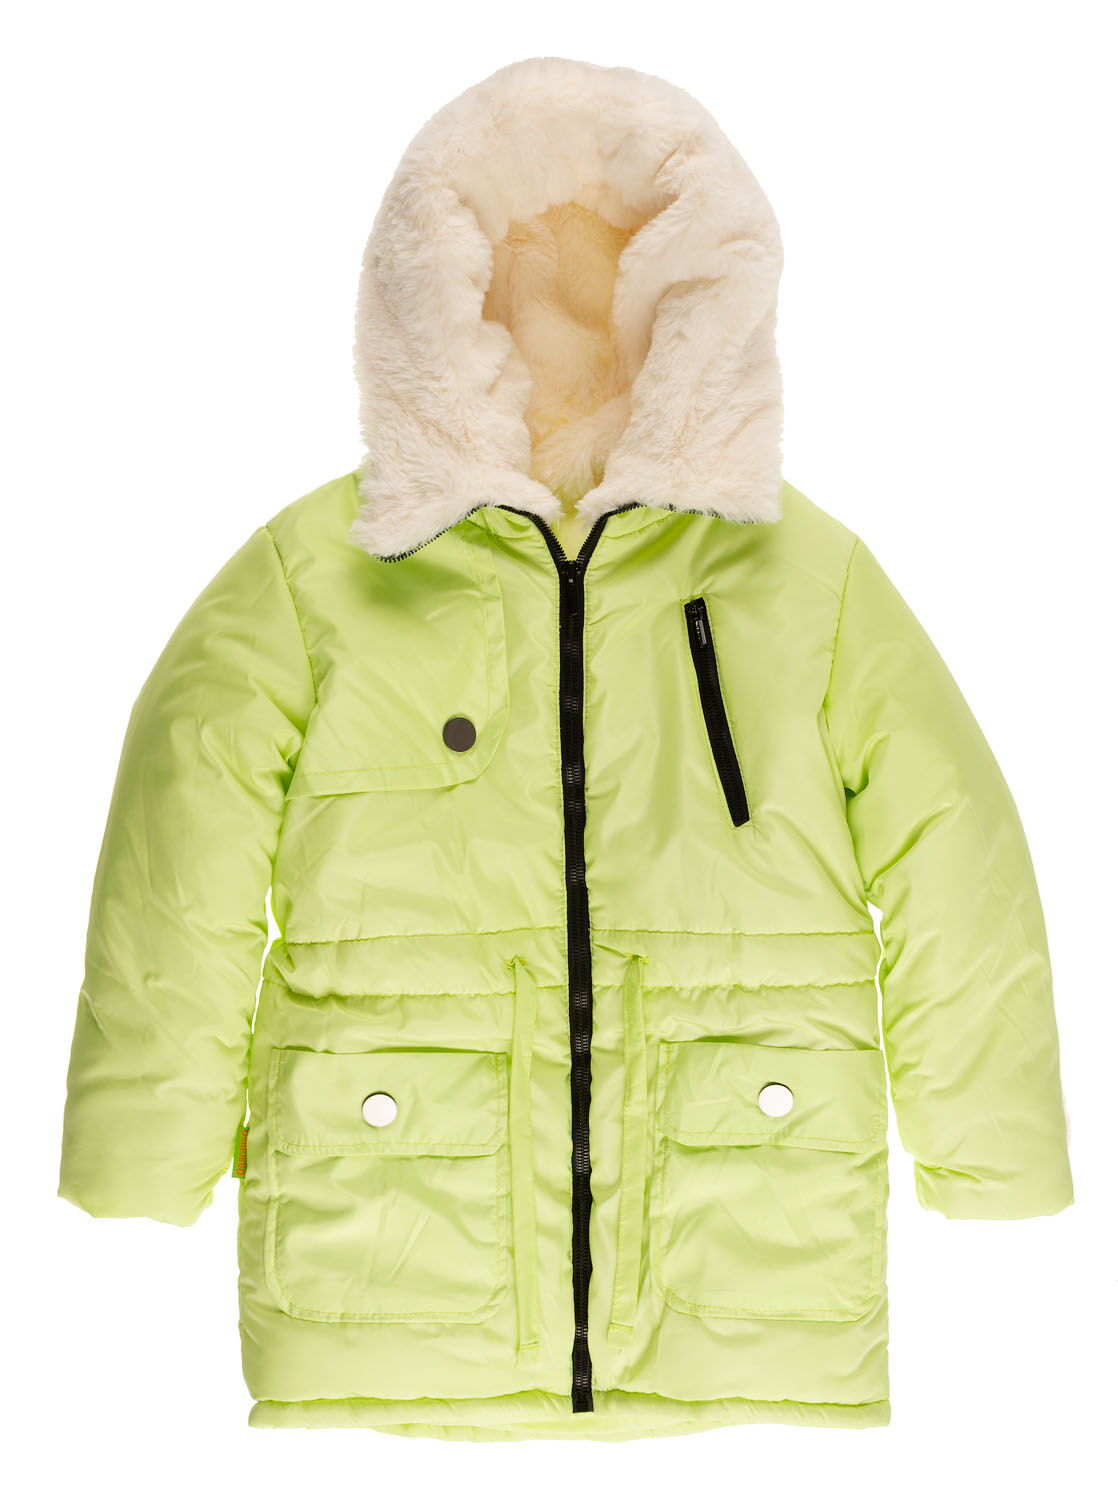 Куртка удлиненная зимняя для девочки Одягайко салатовая 20026О - цена